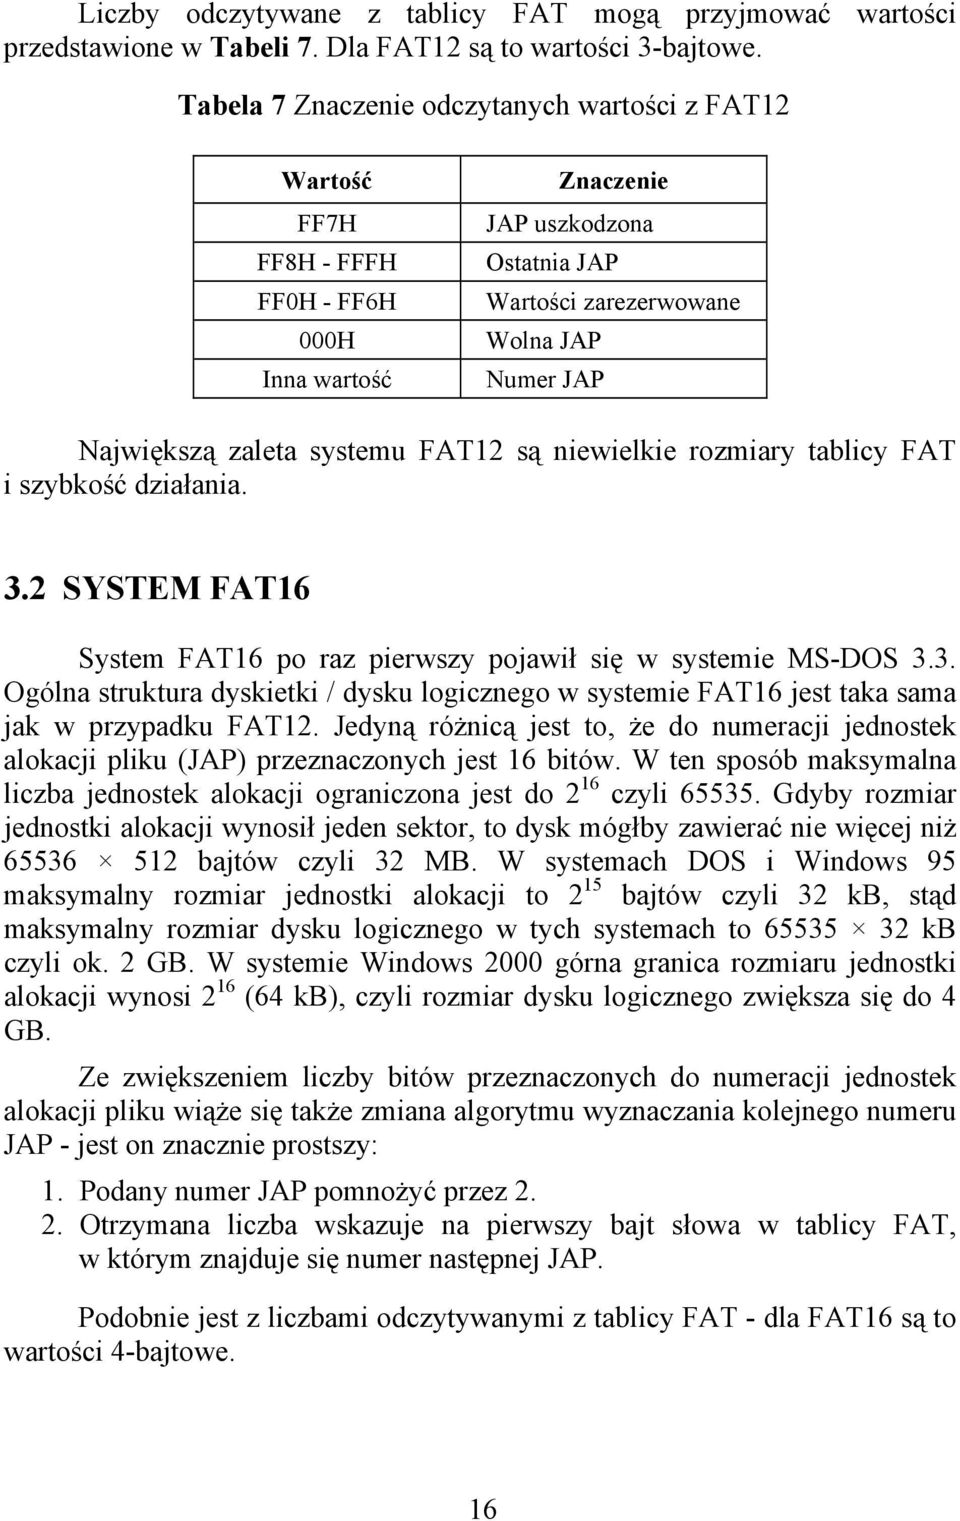 zaleta systemu FAT12 są niewielkie rozmiary tablicy FAT i szybkość działania. 3.2 SYSTEM FAT16 System FAT16 po raz pierwszy pojawił się w systemie MS-DOS 3.3. Ogólna struktura dyskietki / dysku logicznego w systemie FAT16 jest taka sama jak w przypadku FAT12.